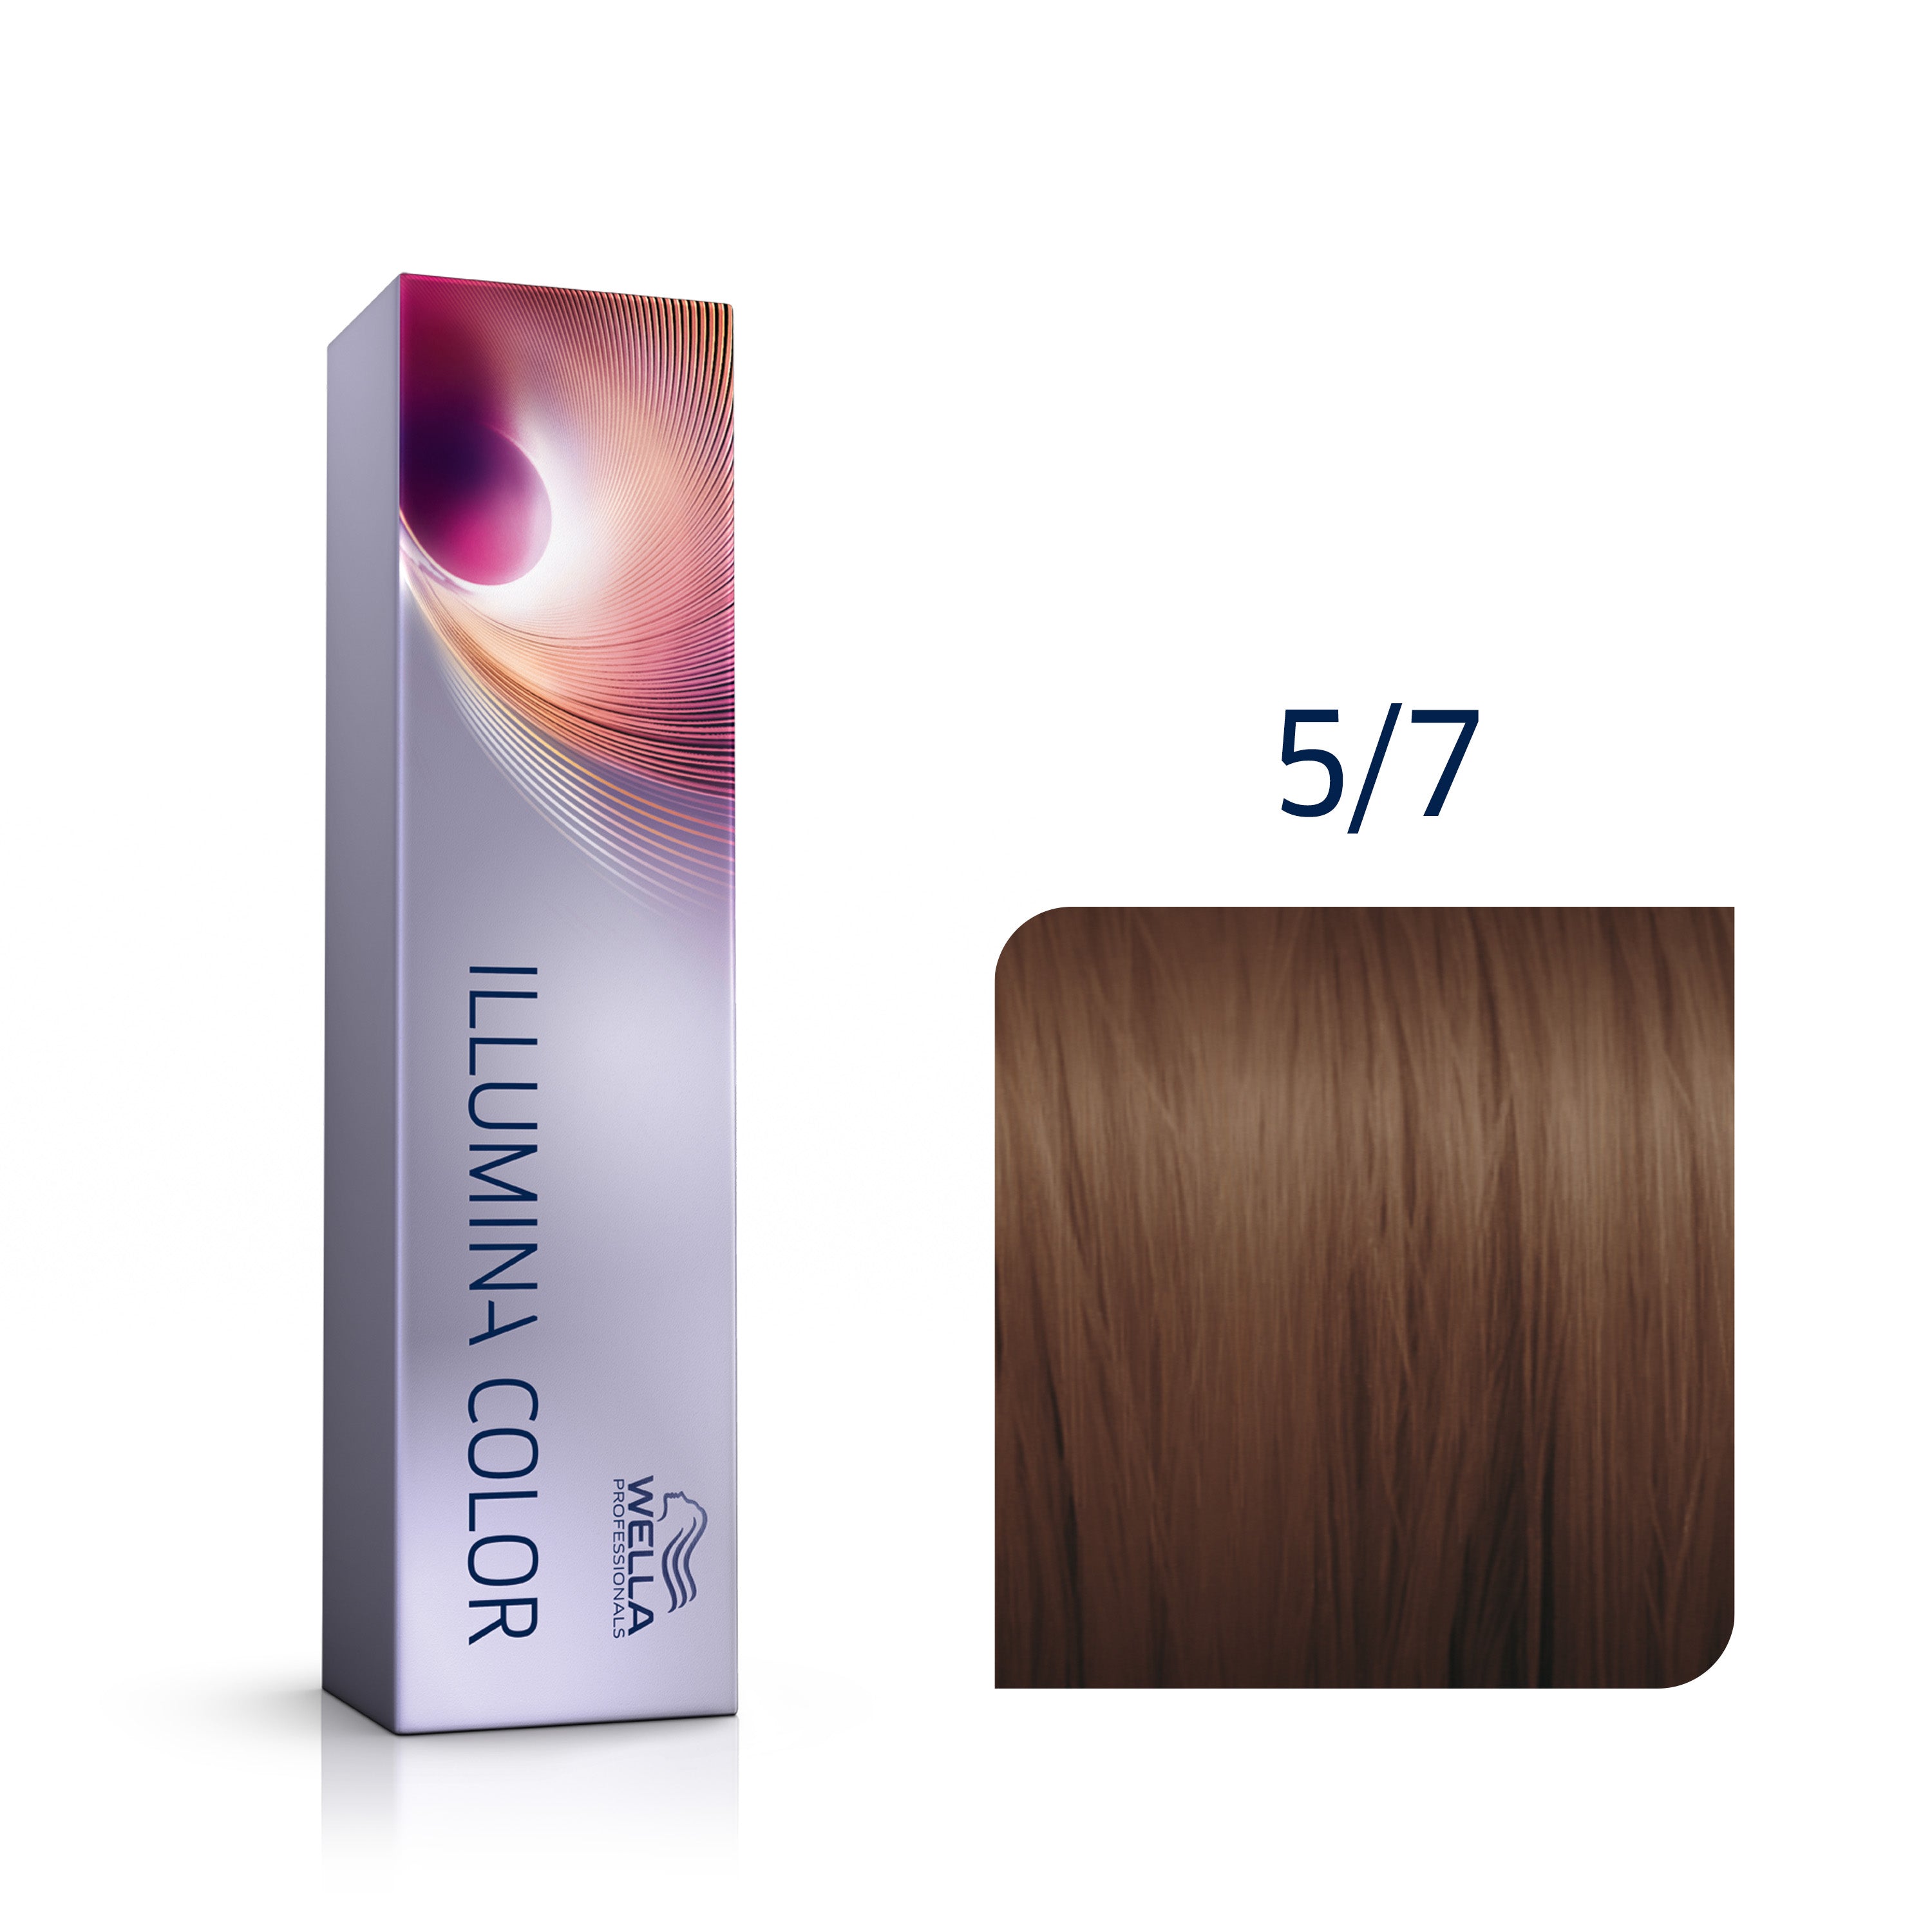 Wella Professional Illumina 5/7 ljusbrun / brun 60 ml